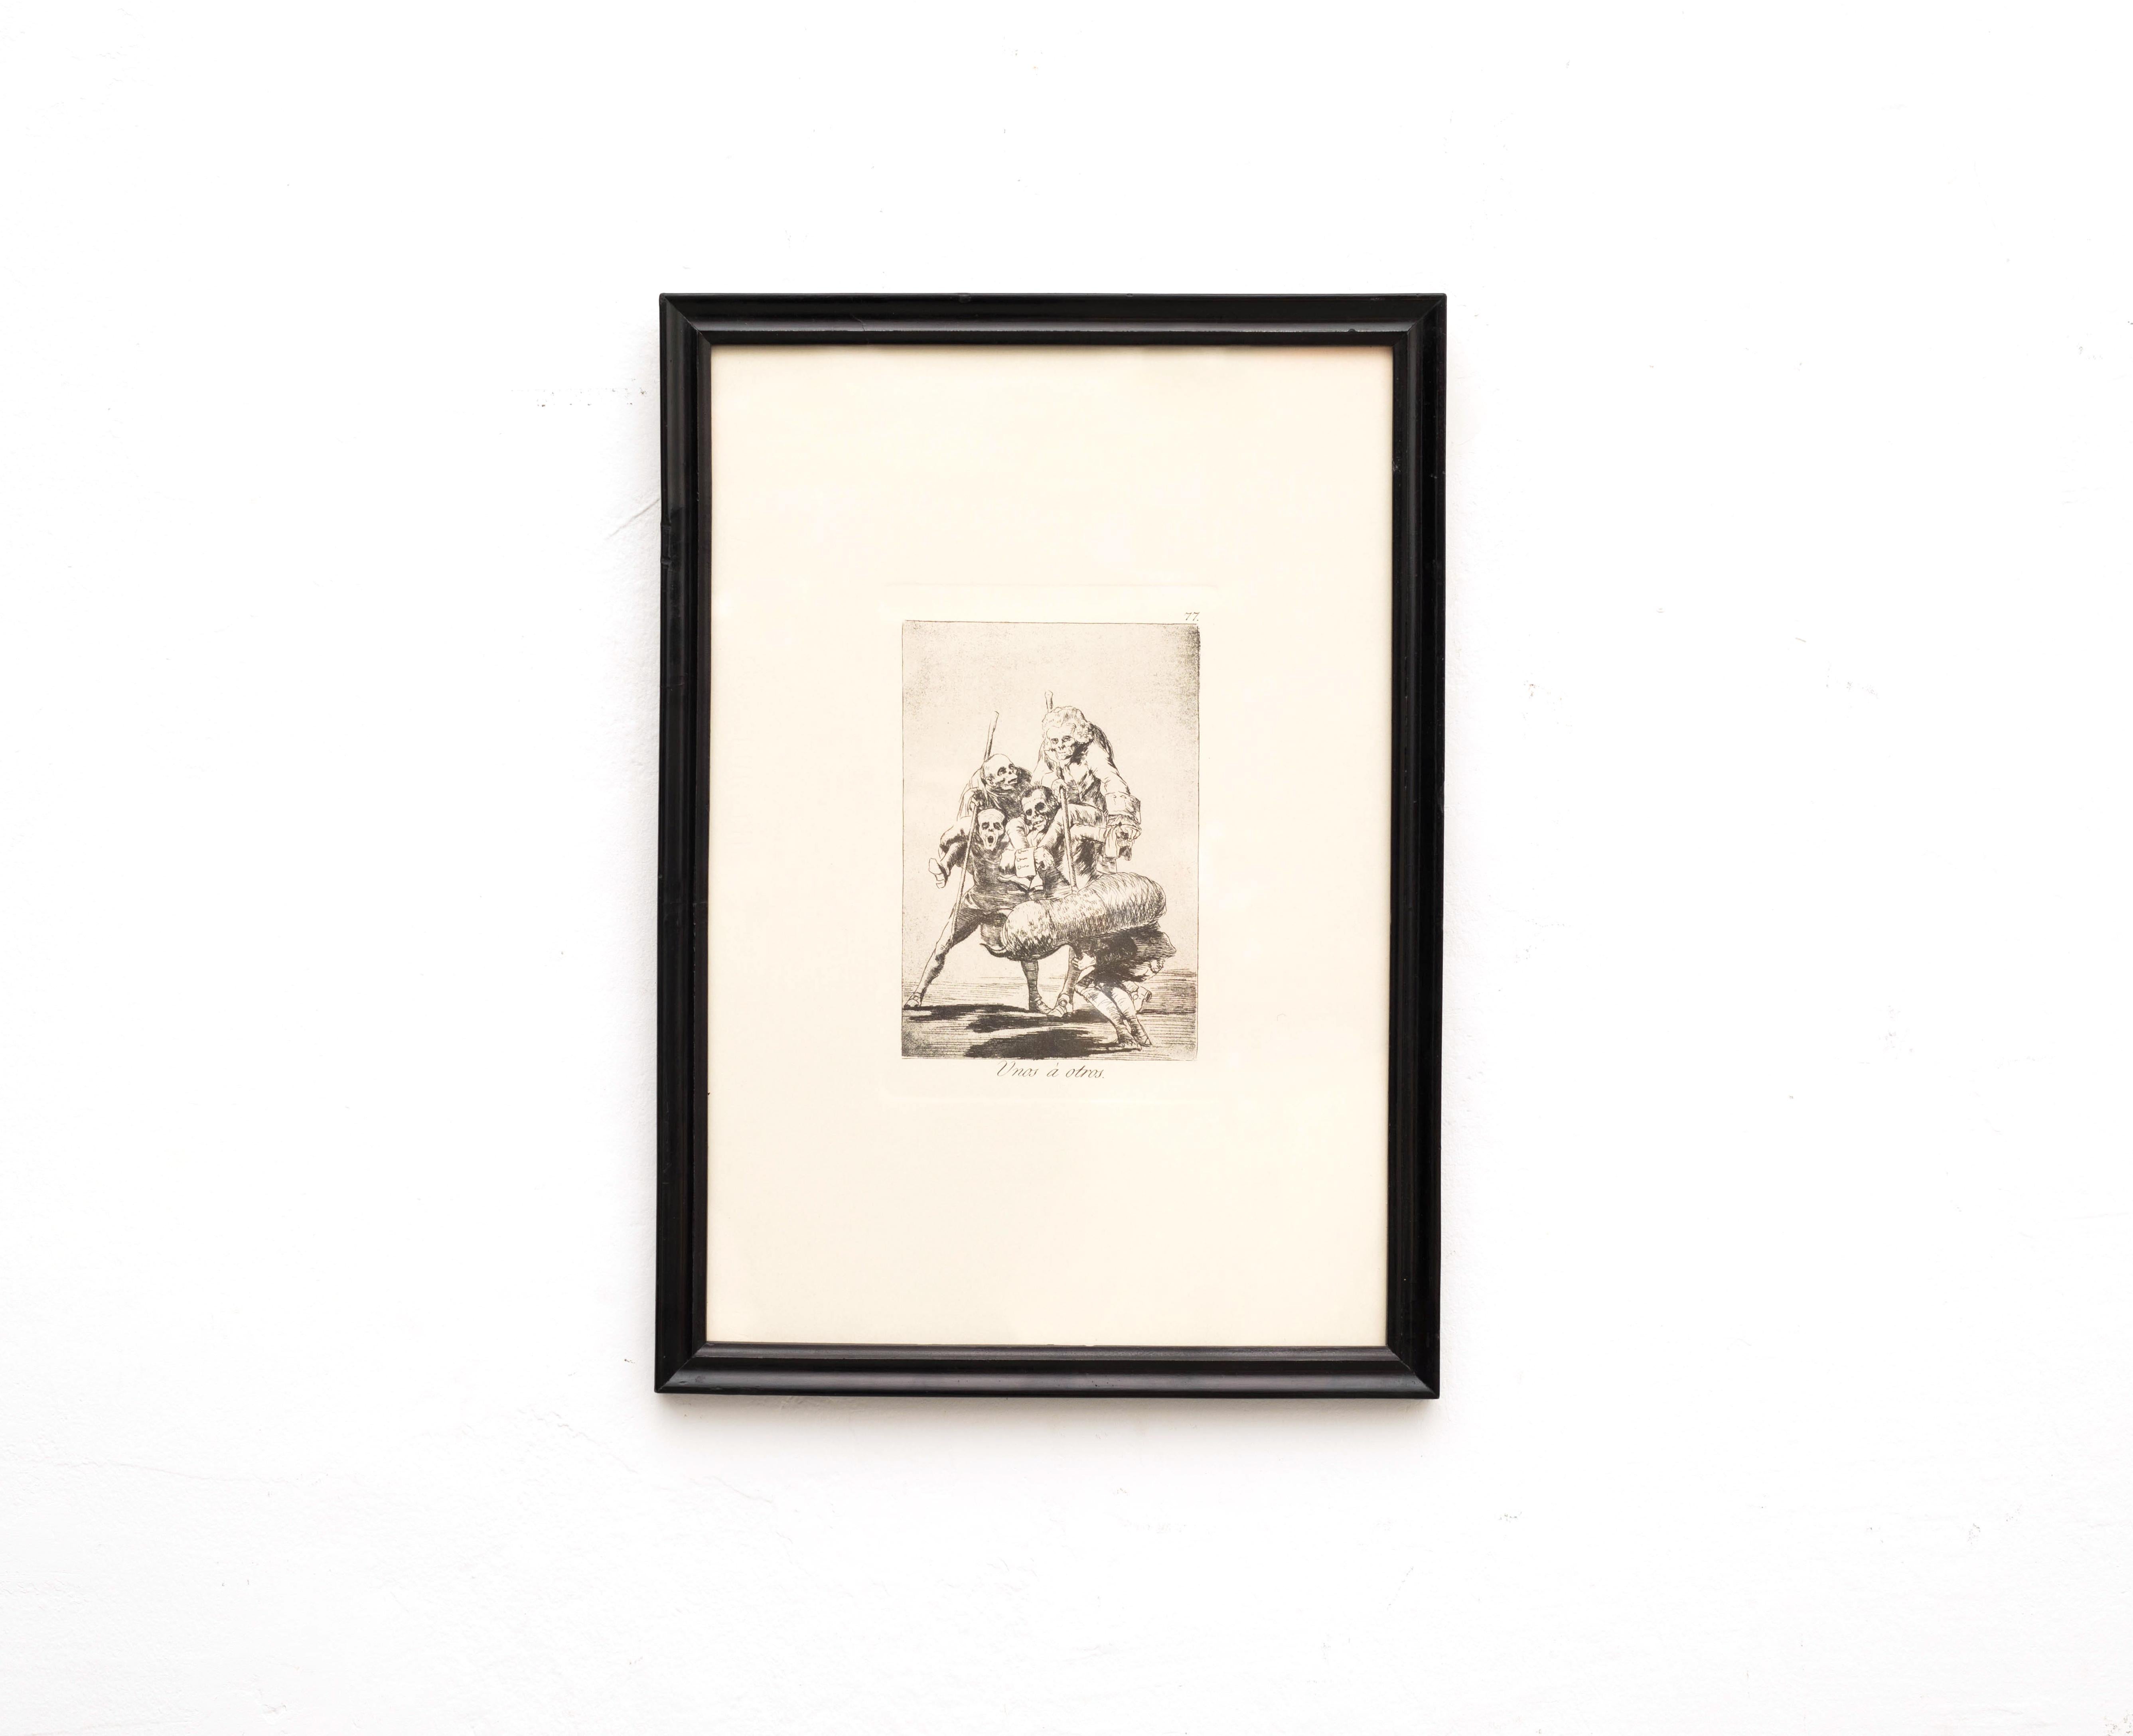 Archivage de la gravure de Goya 